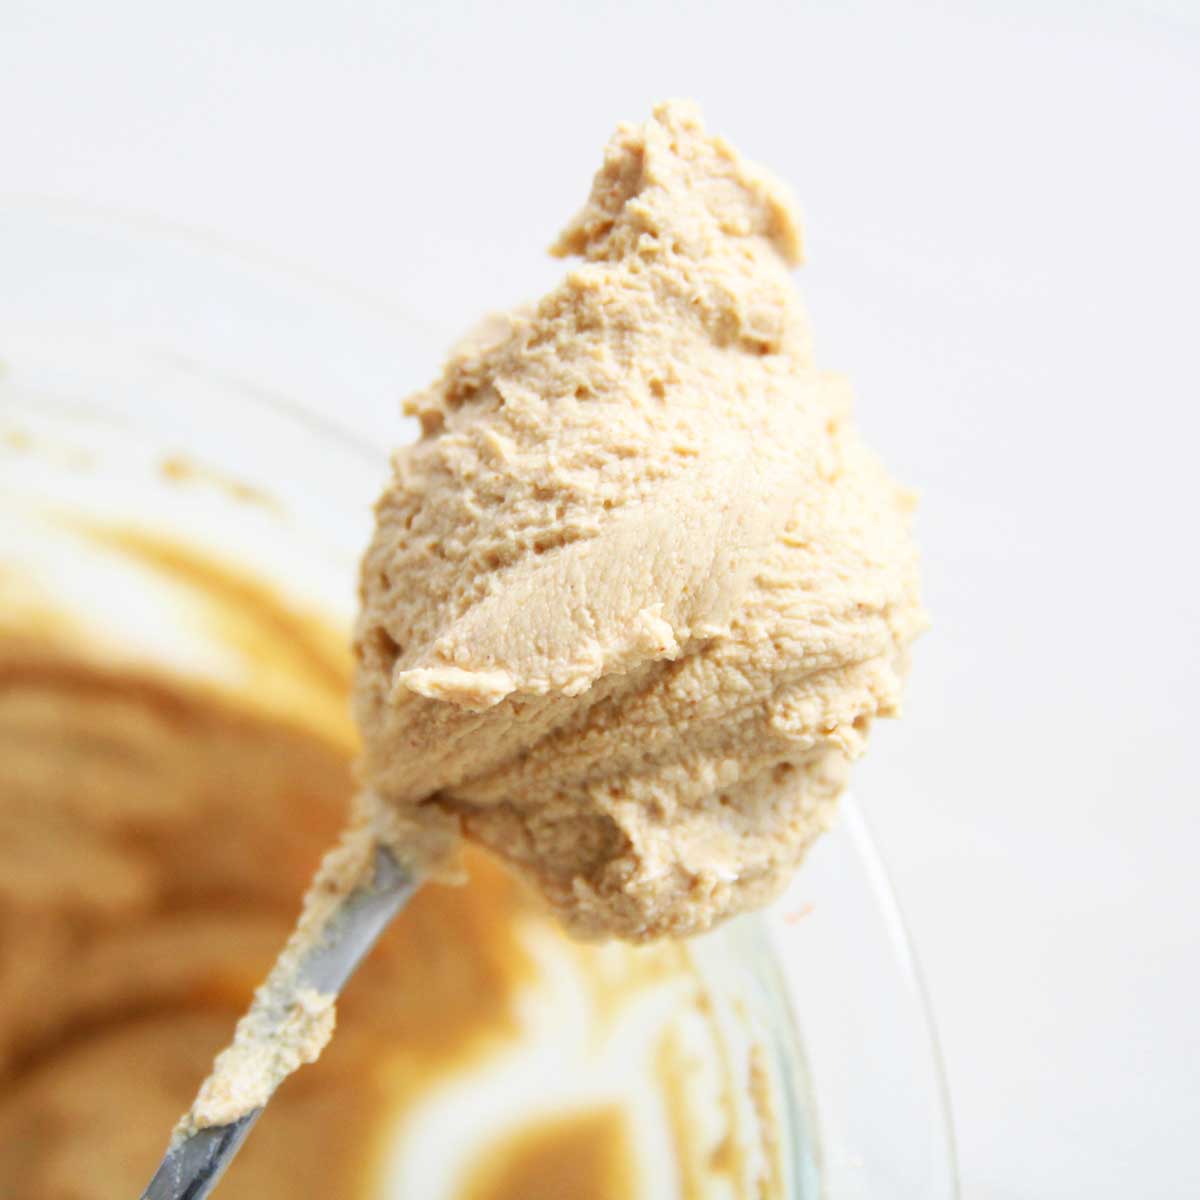 Low Fat PB Powder Yogurt Frosting - PB Fit Nice Cream